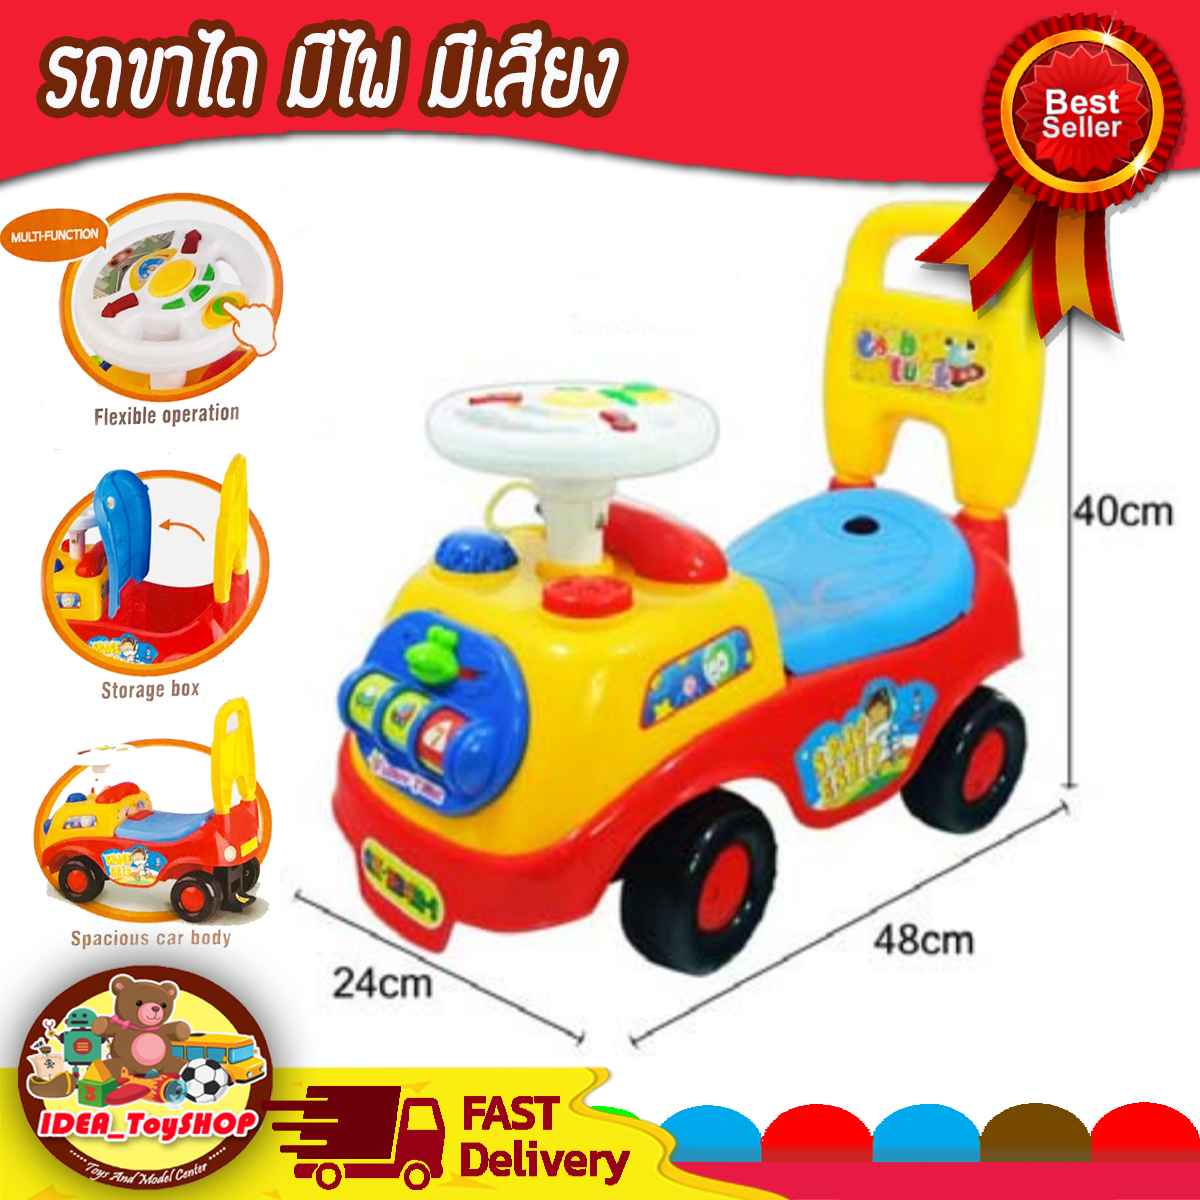 รถขาไถ รถเด็กนั่งได้ มีเสียงเพลง มีไฟ แข็งแรง ขนาด 24 x 47 x 40 เซมติเมตร ฝึกพัฒนาการของเด็ก ช่วยให้ความเพลิดเพลิน ของเล่นเด็ก รถของเล่น toy